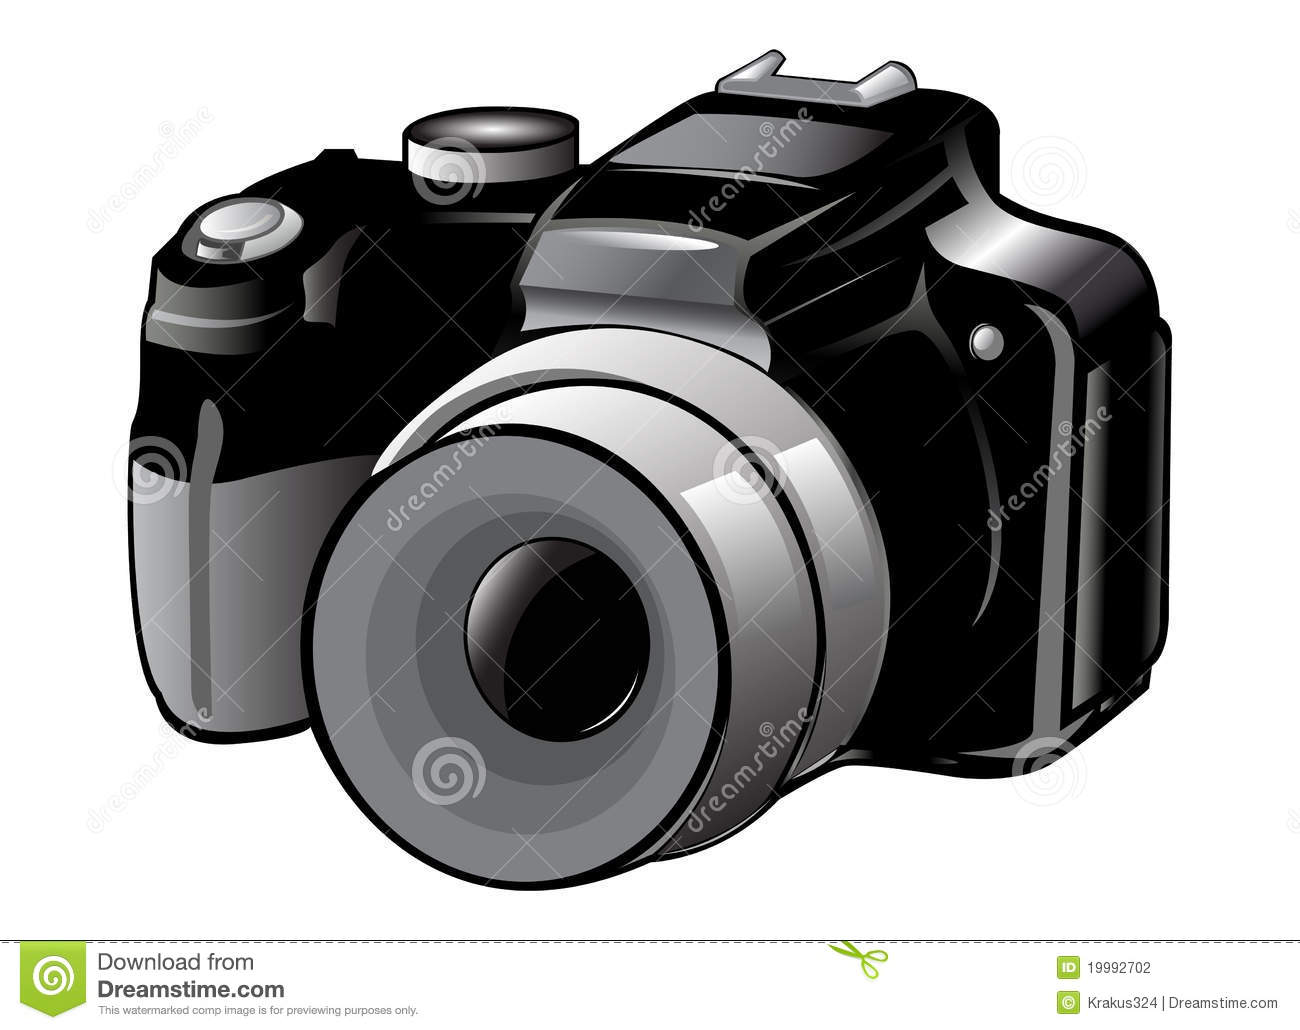 Nikon clipart #17, Download drawings